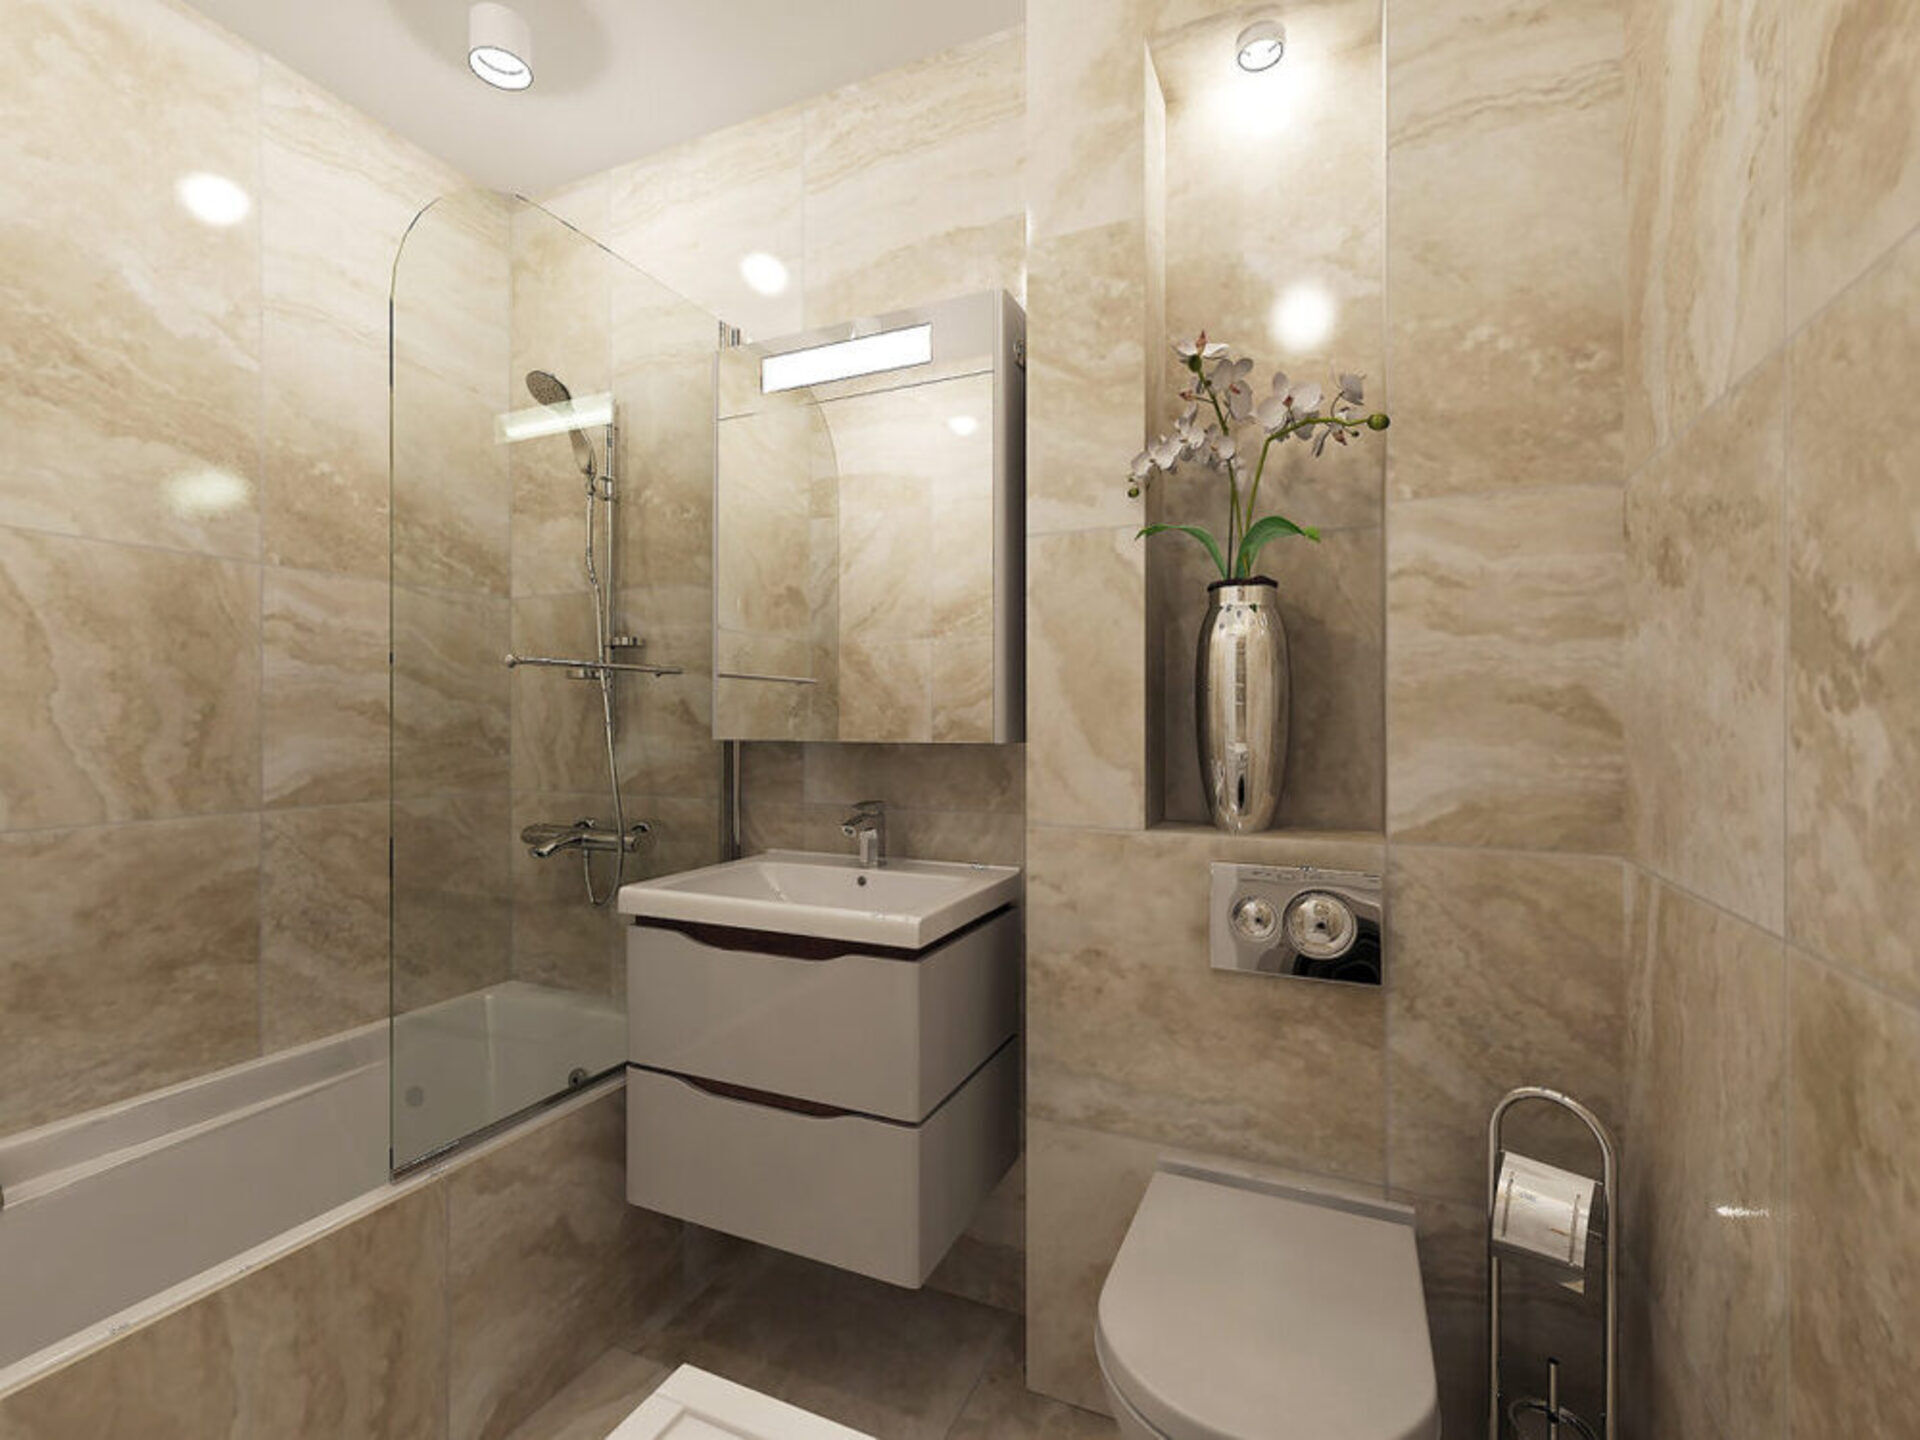 Ремонт ванных комнат фото - галерея санузлов. Раздел: Совмещенный санузел